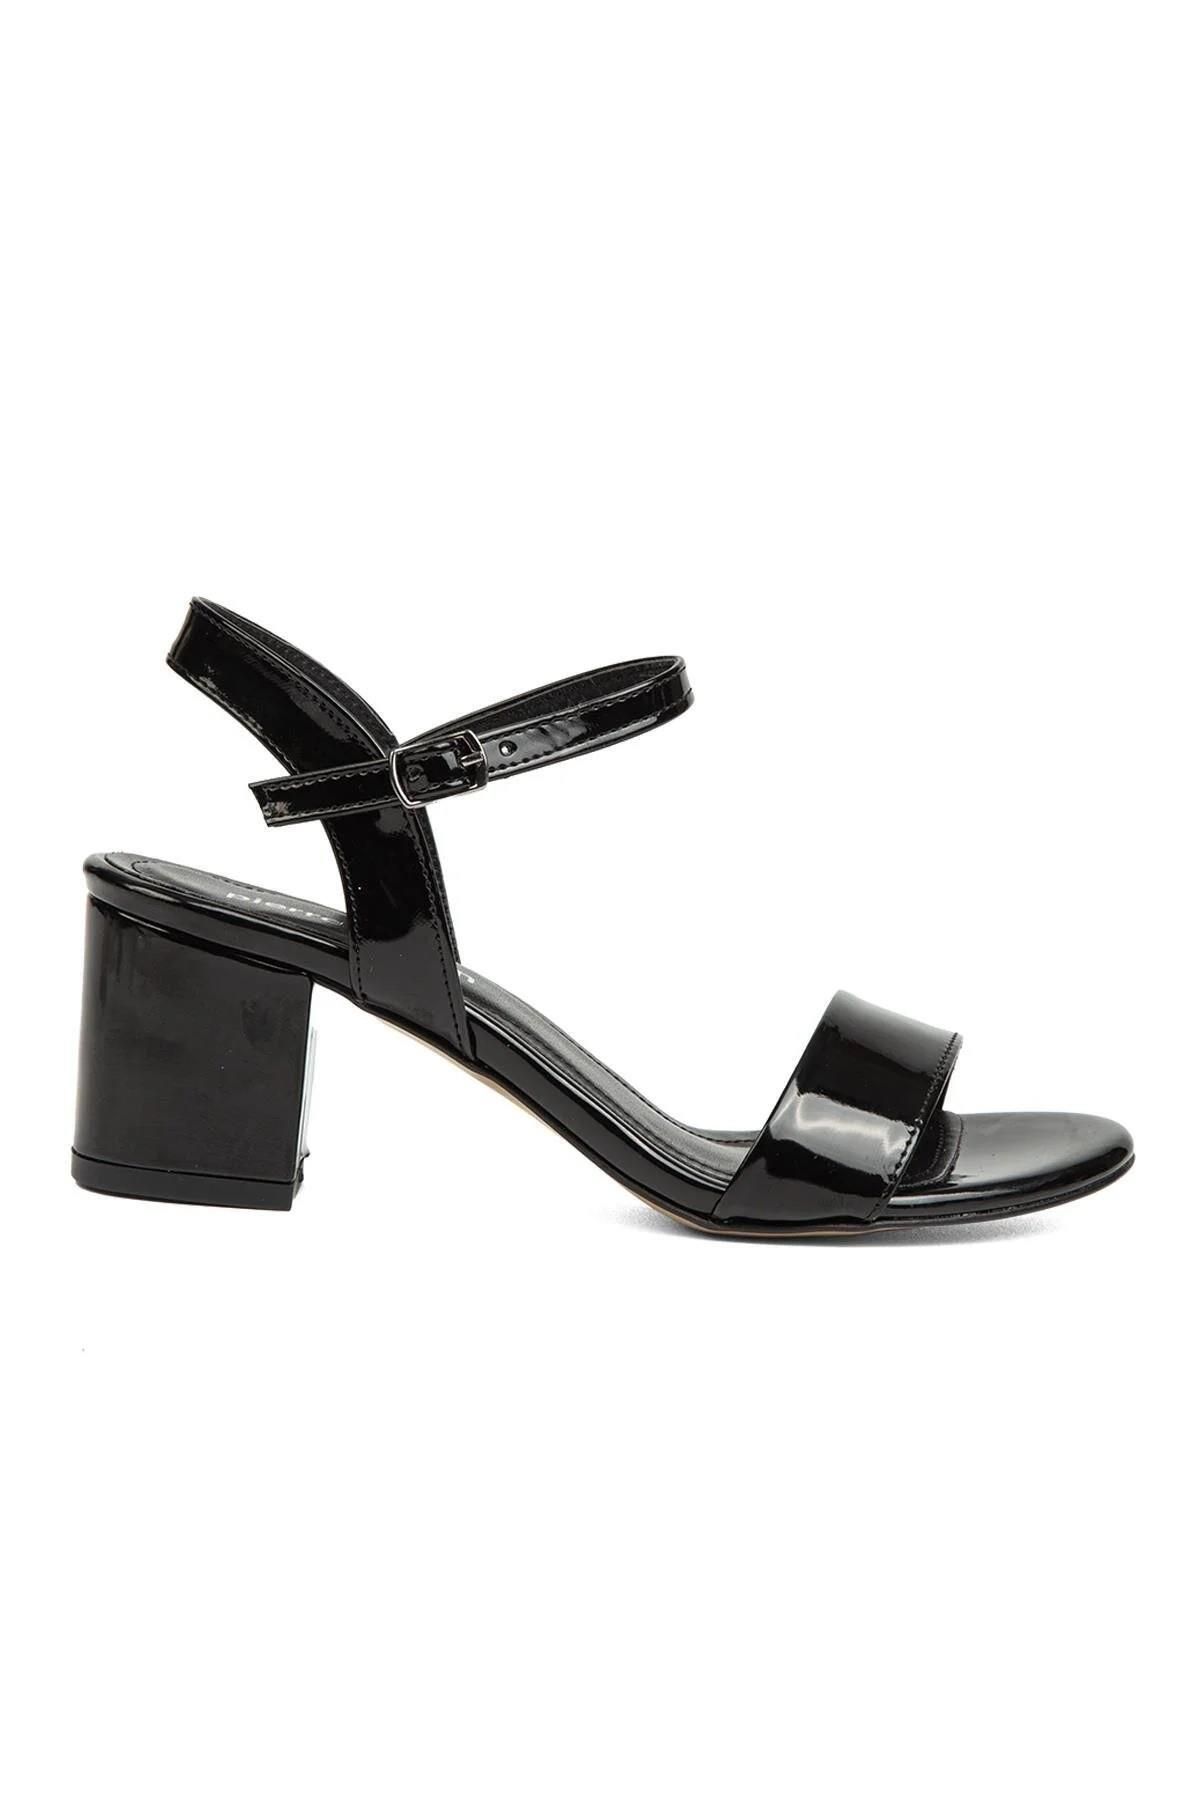 Pierre Cardin PC-51863 Siyah Kadın Topuklu Sandalet